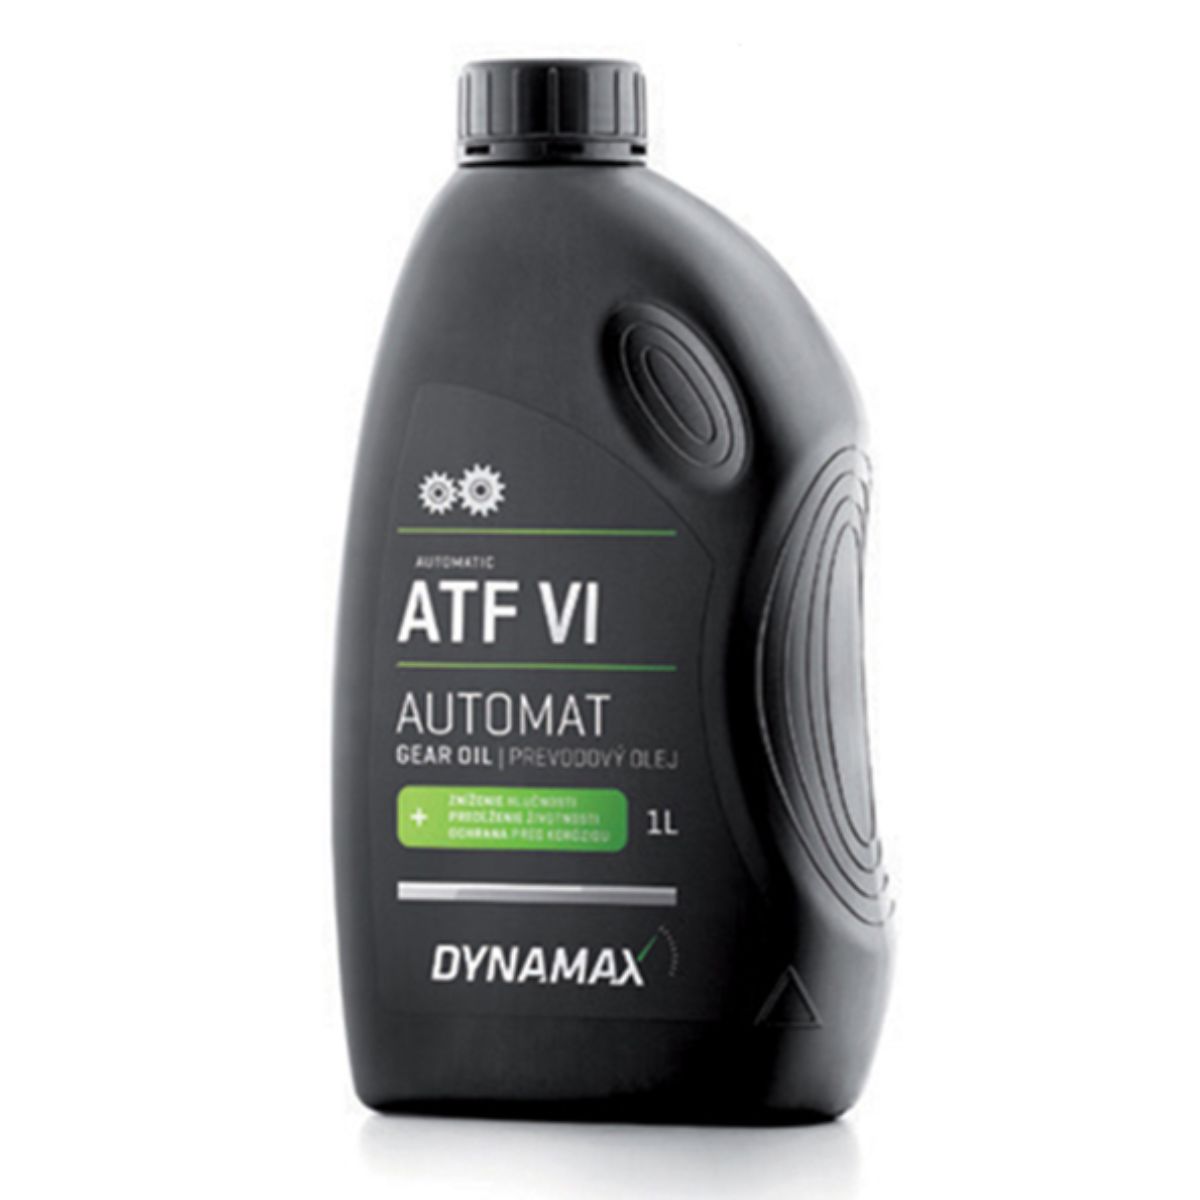 DYNAMAX MENJ AUTOMATIC ATF VI 1/1 ( X12 ) 